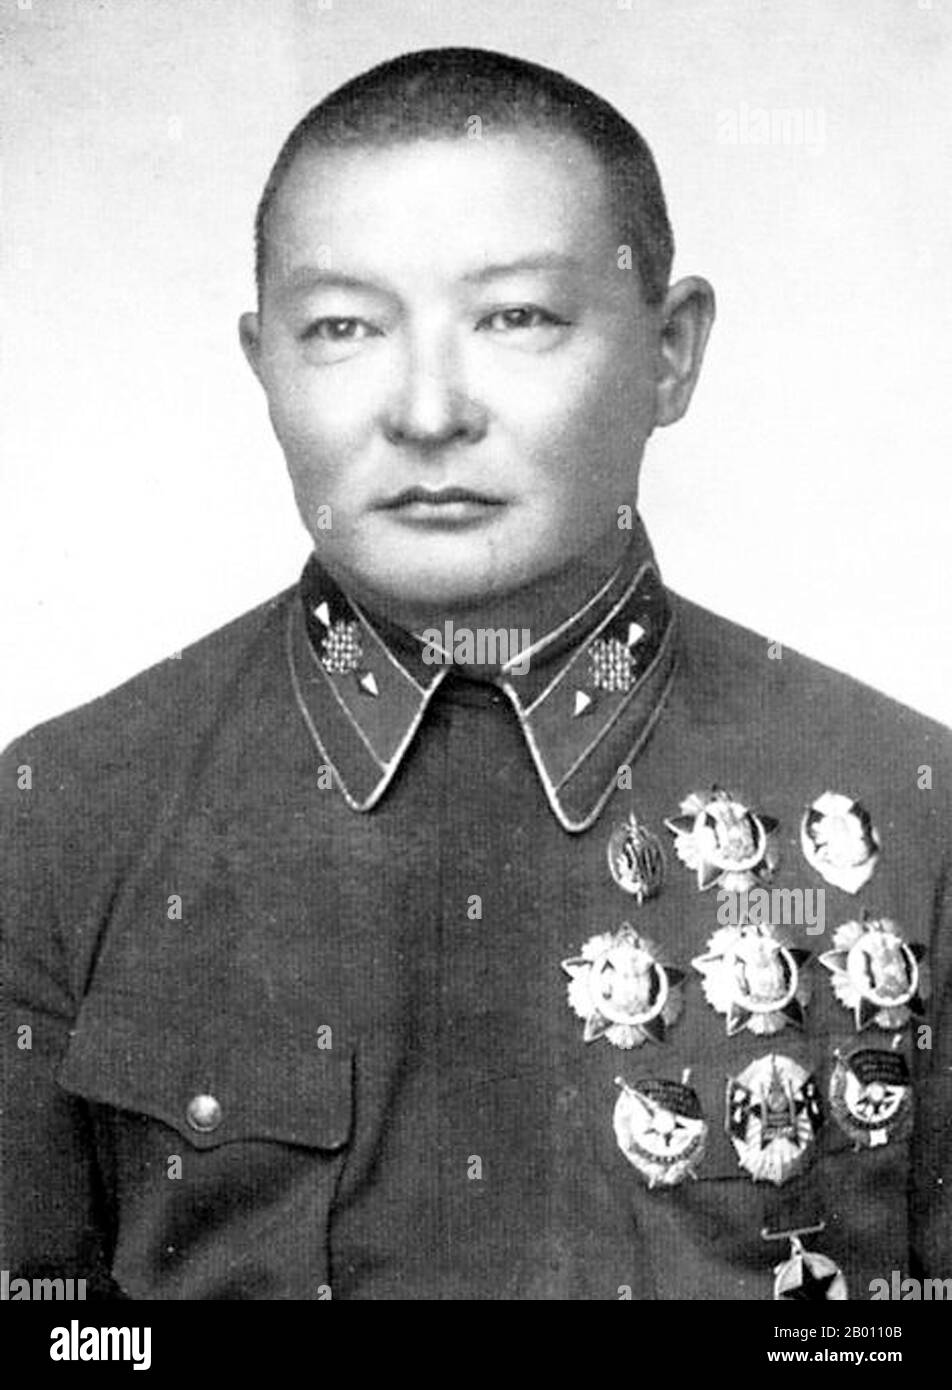 Mongolei: Khorloogiin Choibalsan (1895-1952) kommunistischer Führer der Mongolischen Volksrepublik (c,1929-1952), c. 1920s. Choibalsan war ursprünglich als lamaistischer Mönch ausgebildet worden. Er nahm Kontakt mit russischen Revolutionären auf, als er nach Sibirien reiste. 1919 gründete er seine erste revolutionäre Organisation und schloss sich 1921 mit Damdin Sukhbaatar der mongolischen Volkspartei an. Nachdem die mongolischen und sowjetischen Truppen 1921 in Urga eintraten und eine prosowjetische Regierung gründeten, wurde Choibalsan stellvertretender Kriegsminister und dominierte die Führung seines Landes und säuberte seine Rivalen. Stockfoto